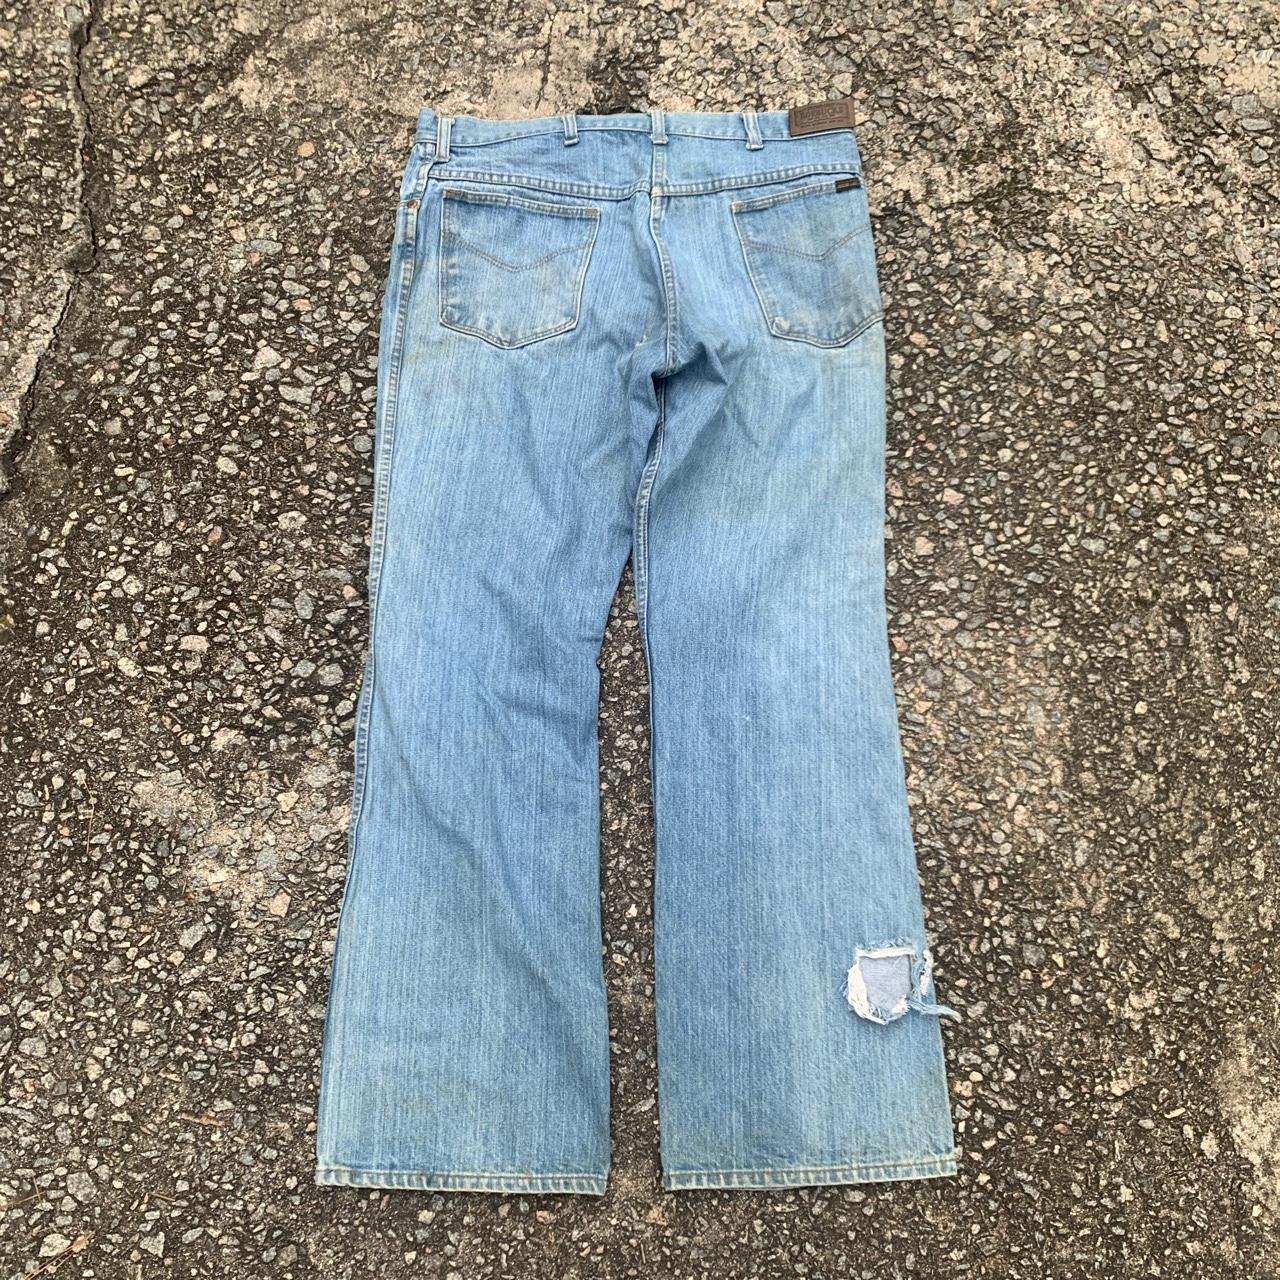 Vintage 1970’s flared jeans Sears Roebucks brand... - Depop